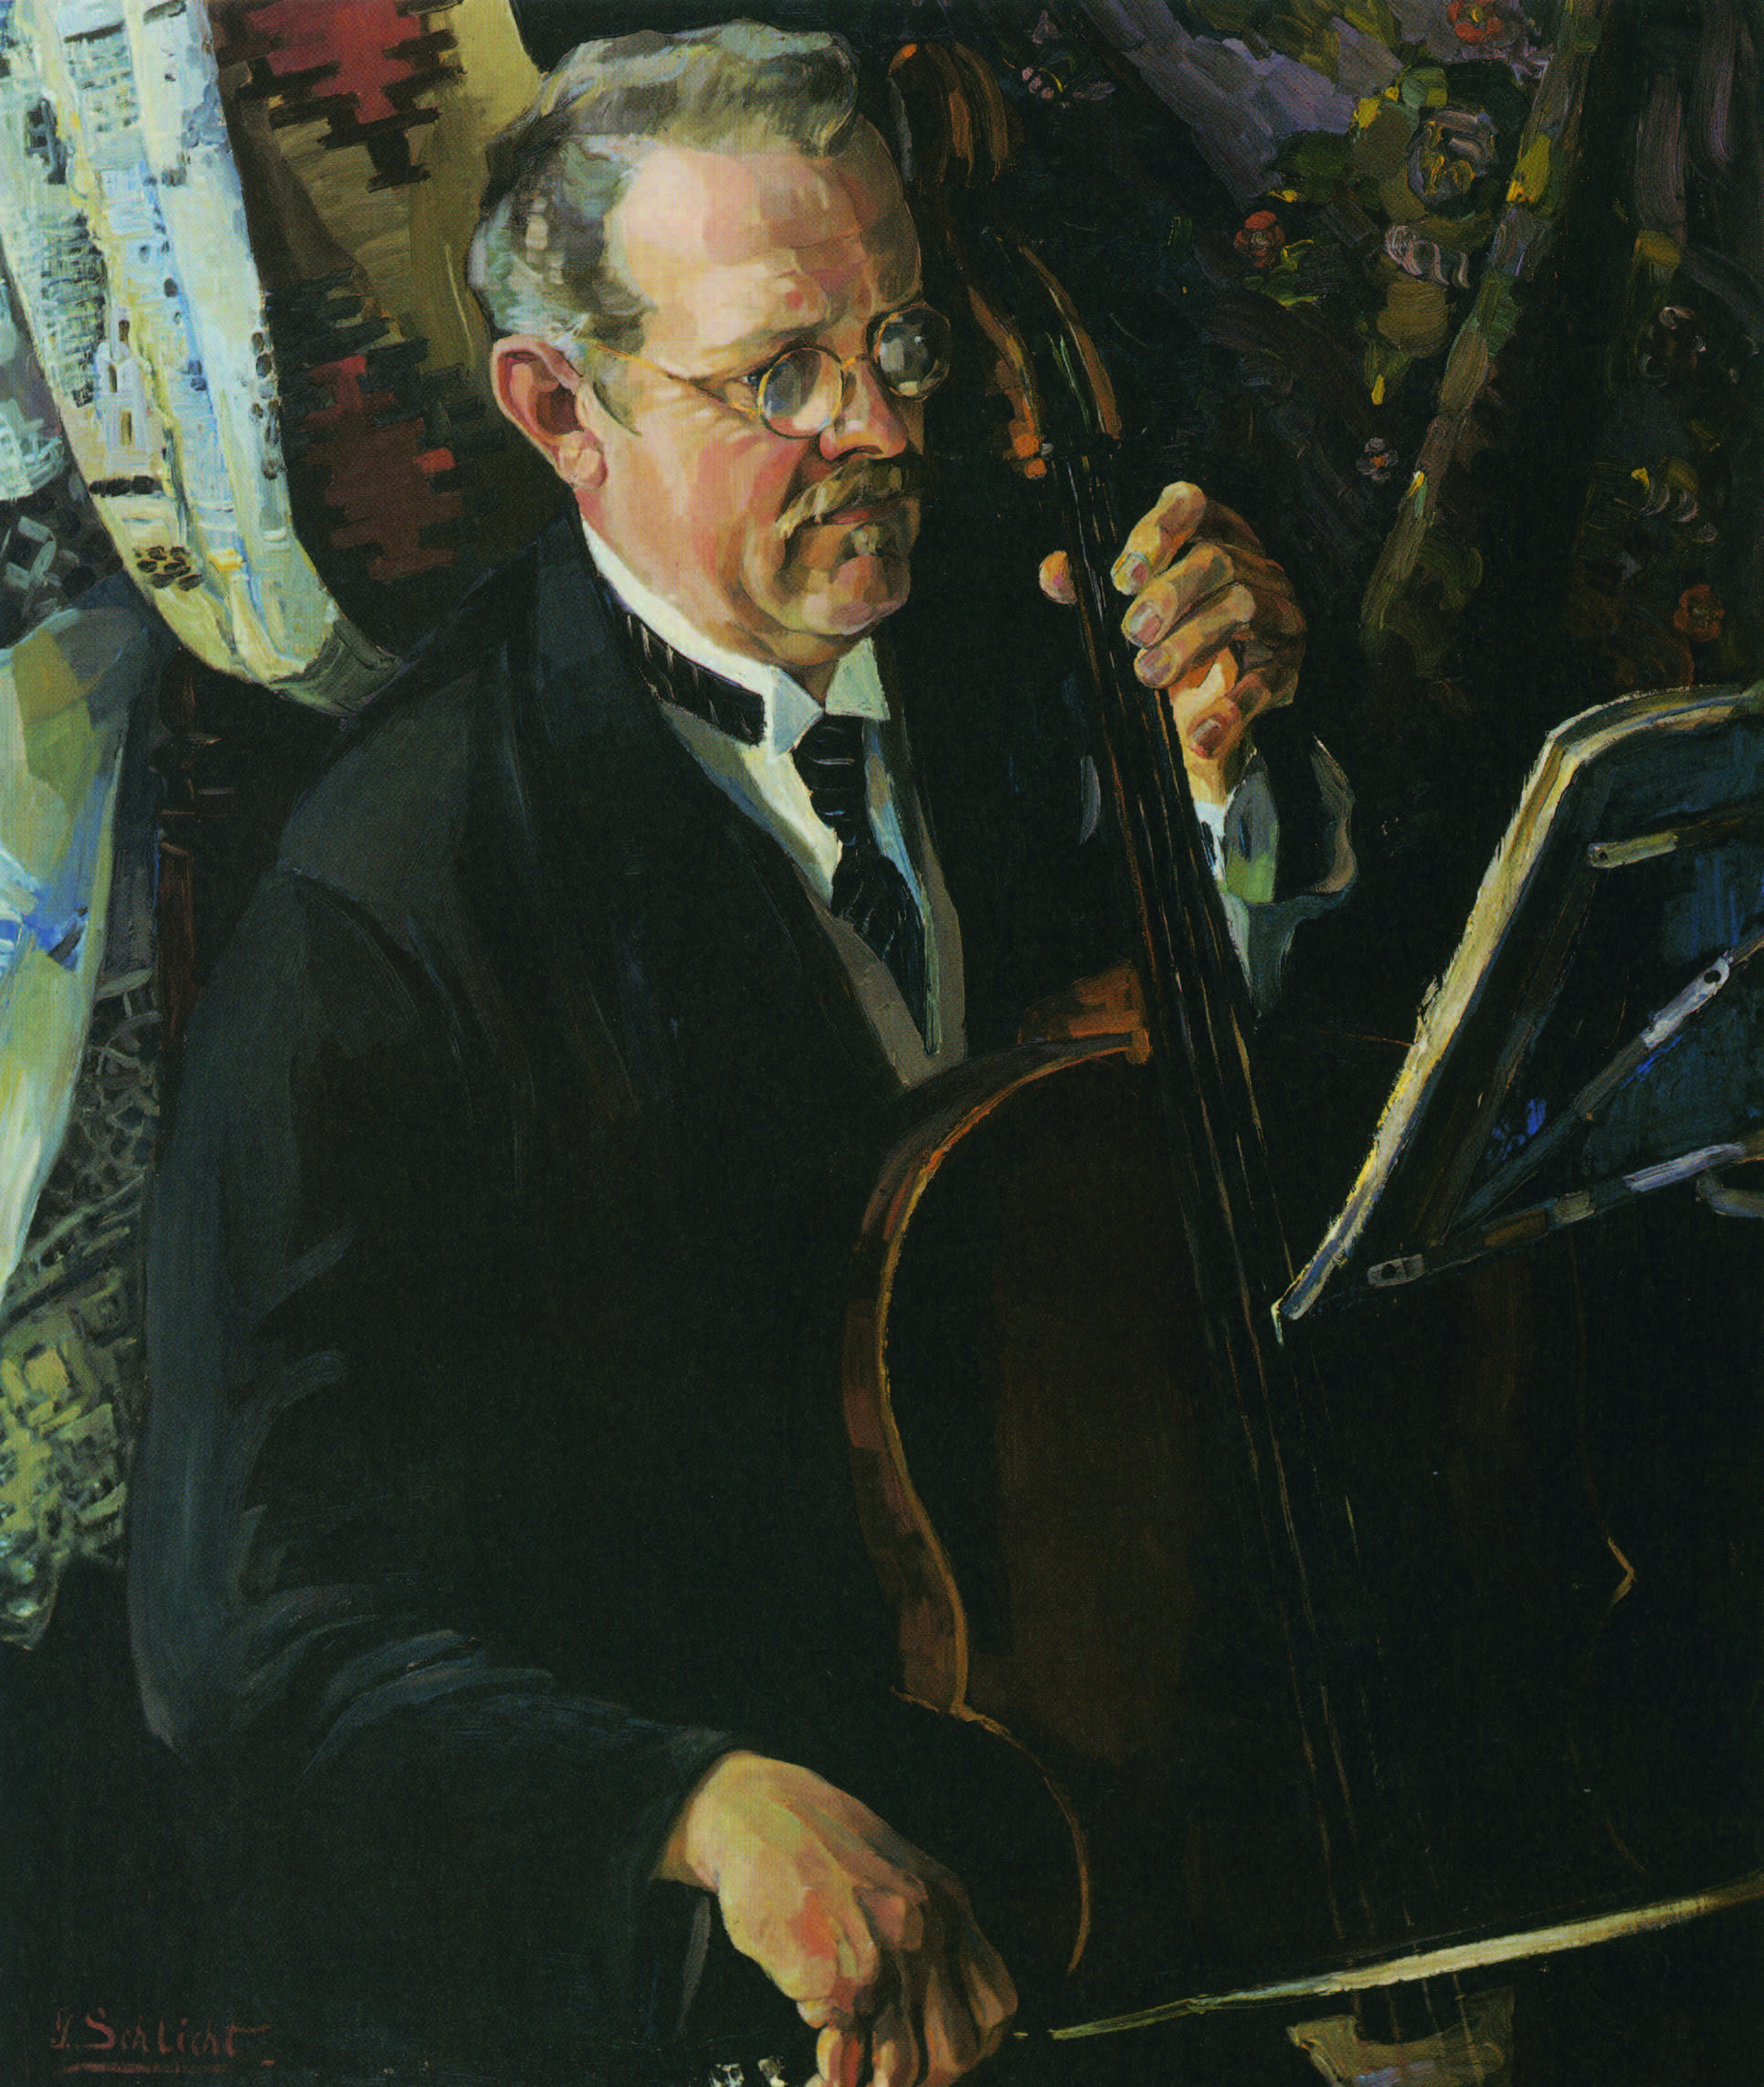 Georg Schlicht: Dr. med. Karl Du Mont mit Cello. Ca. 1923, Öl auf Leinwand, 80 x 64 cm. Privatbesitz